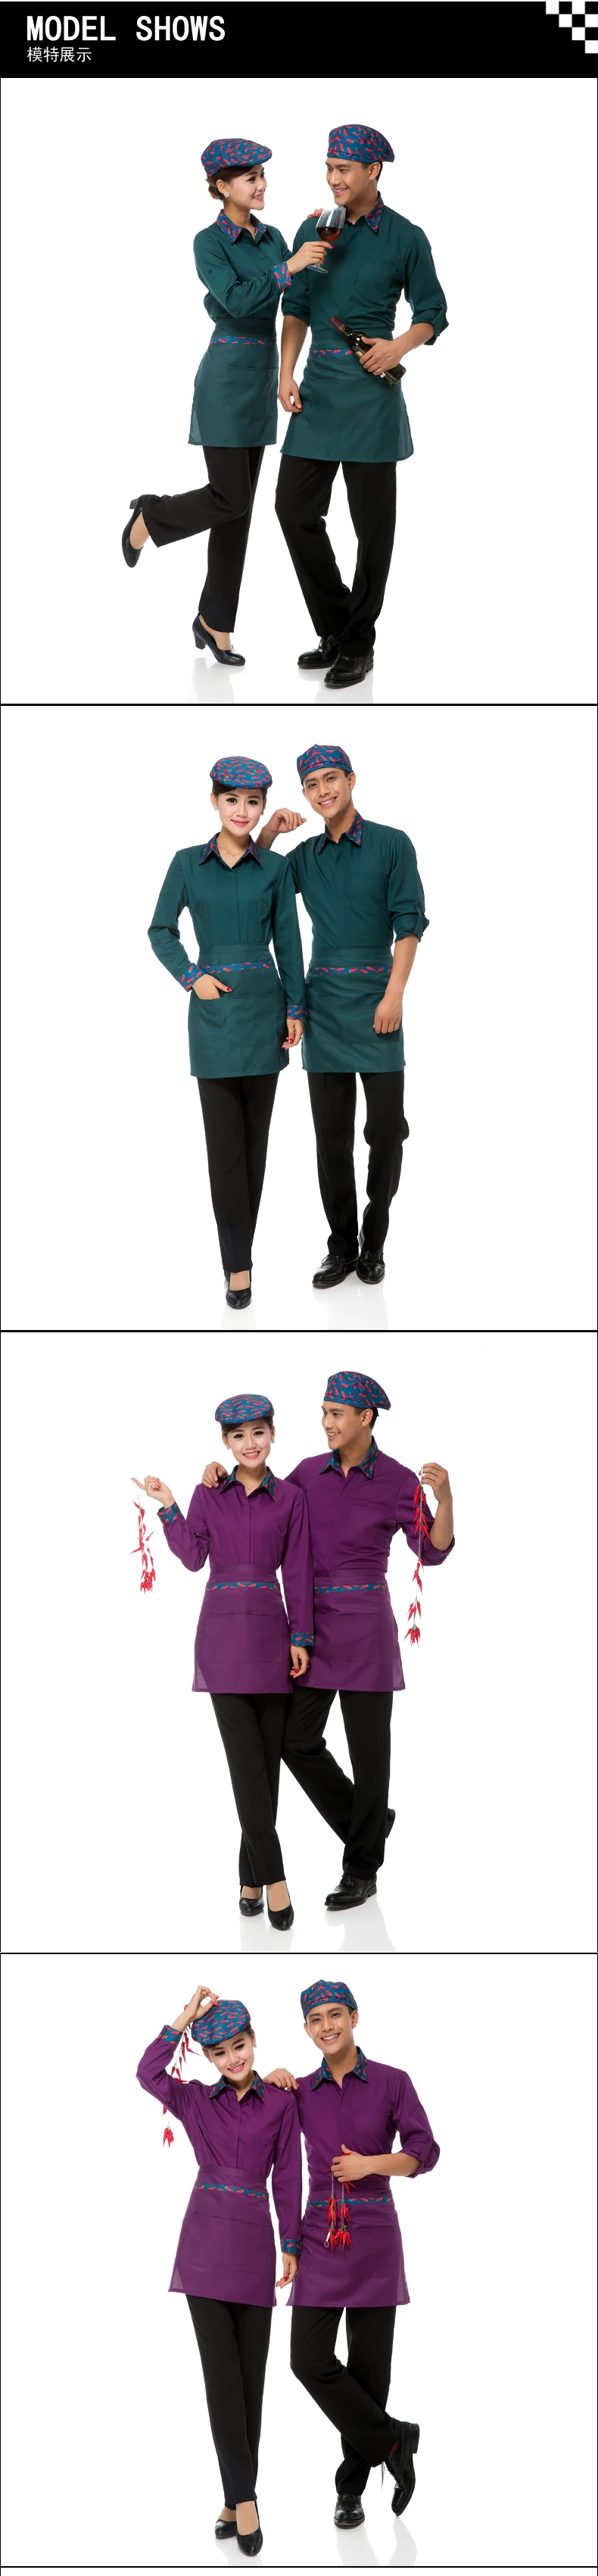 Ресторан отеля униформа официанта длинный рукав куртка повара Ресторан рабочая одежда с фартук для человека и